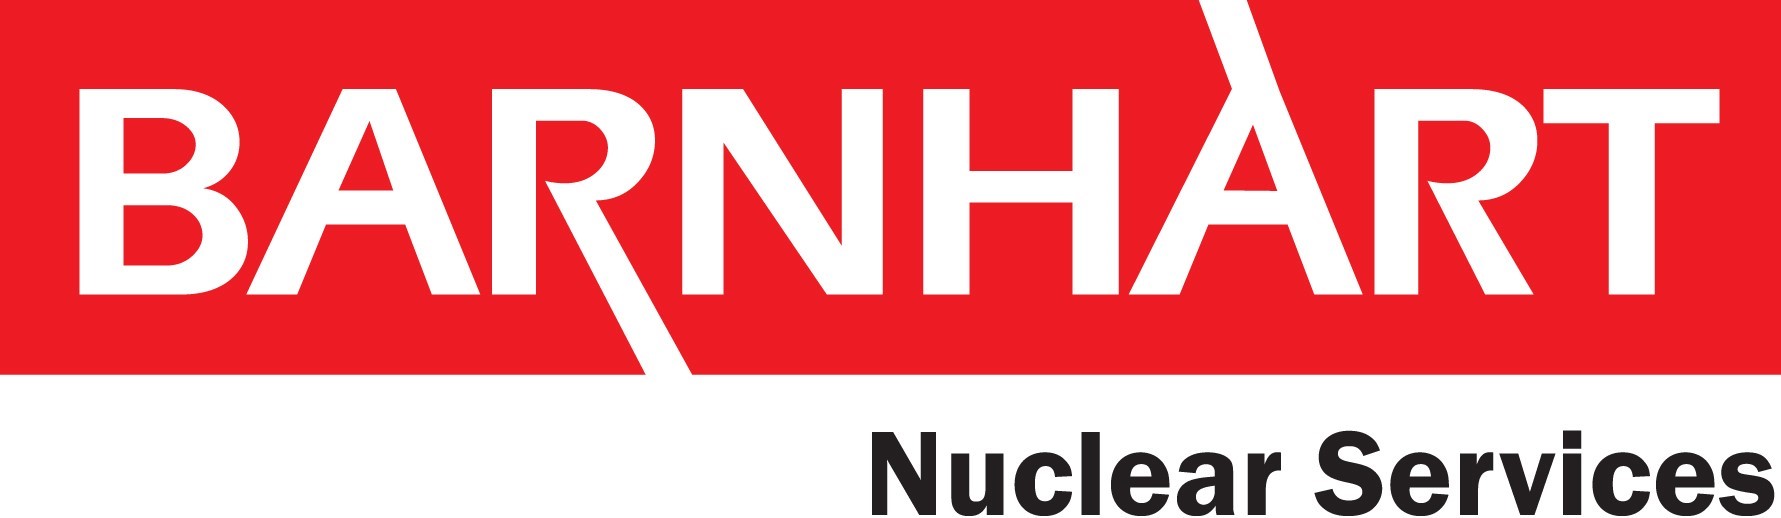 巴恩哈特核服务公司标志